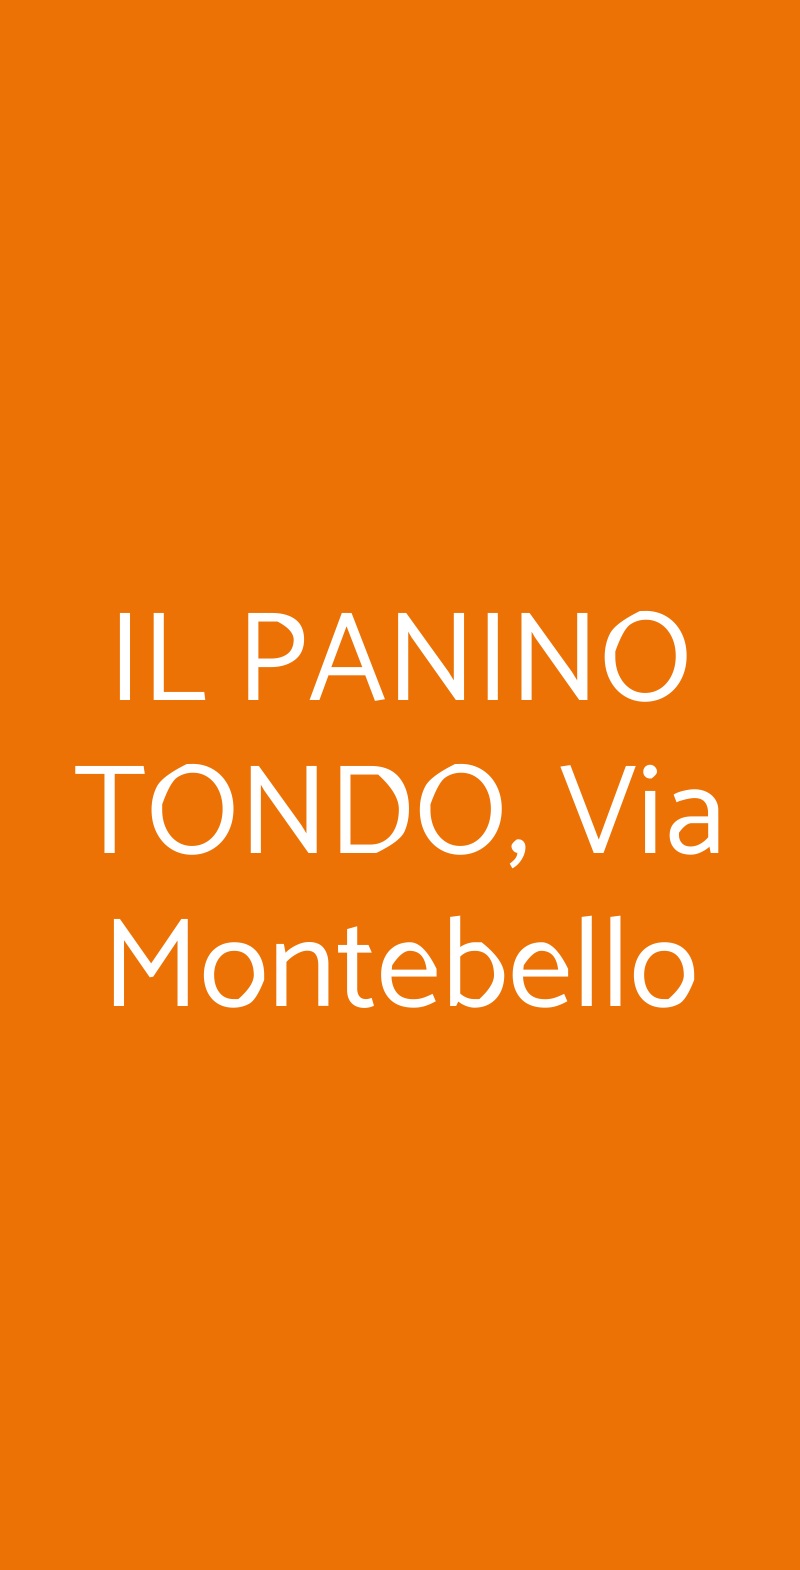 IL PANINO TONDO, Via Montebello Firenze menù 1 pagina